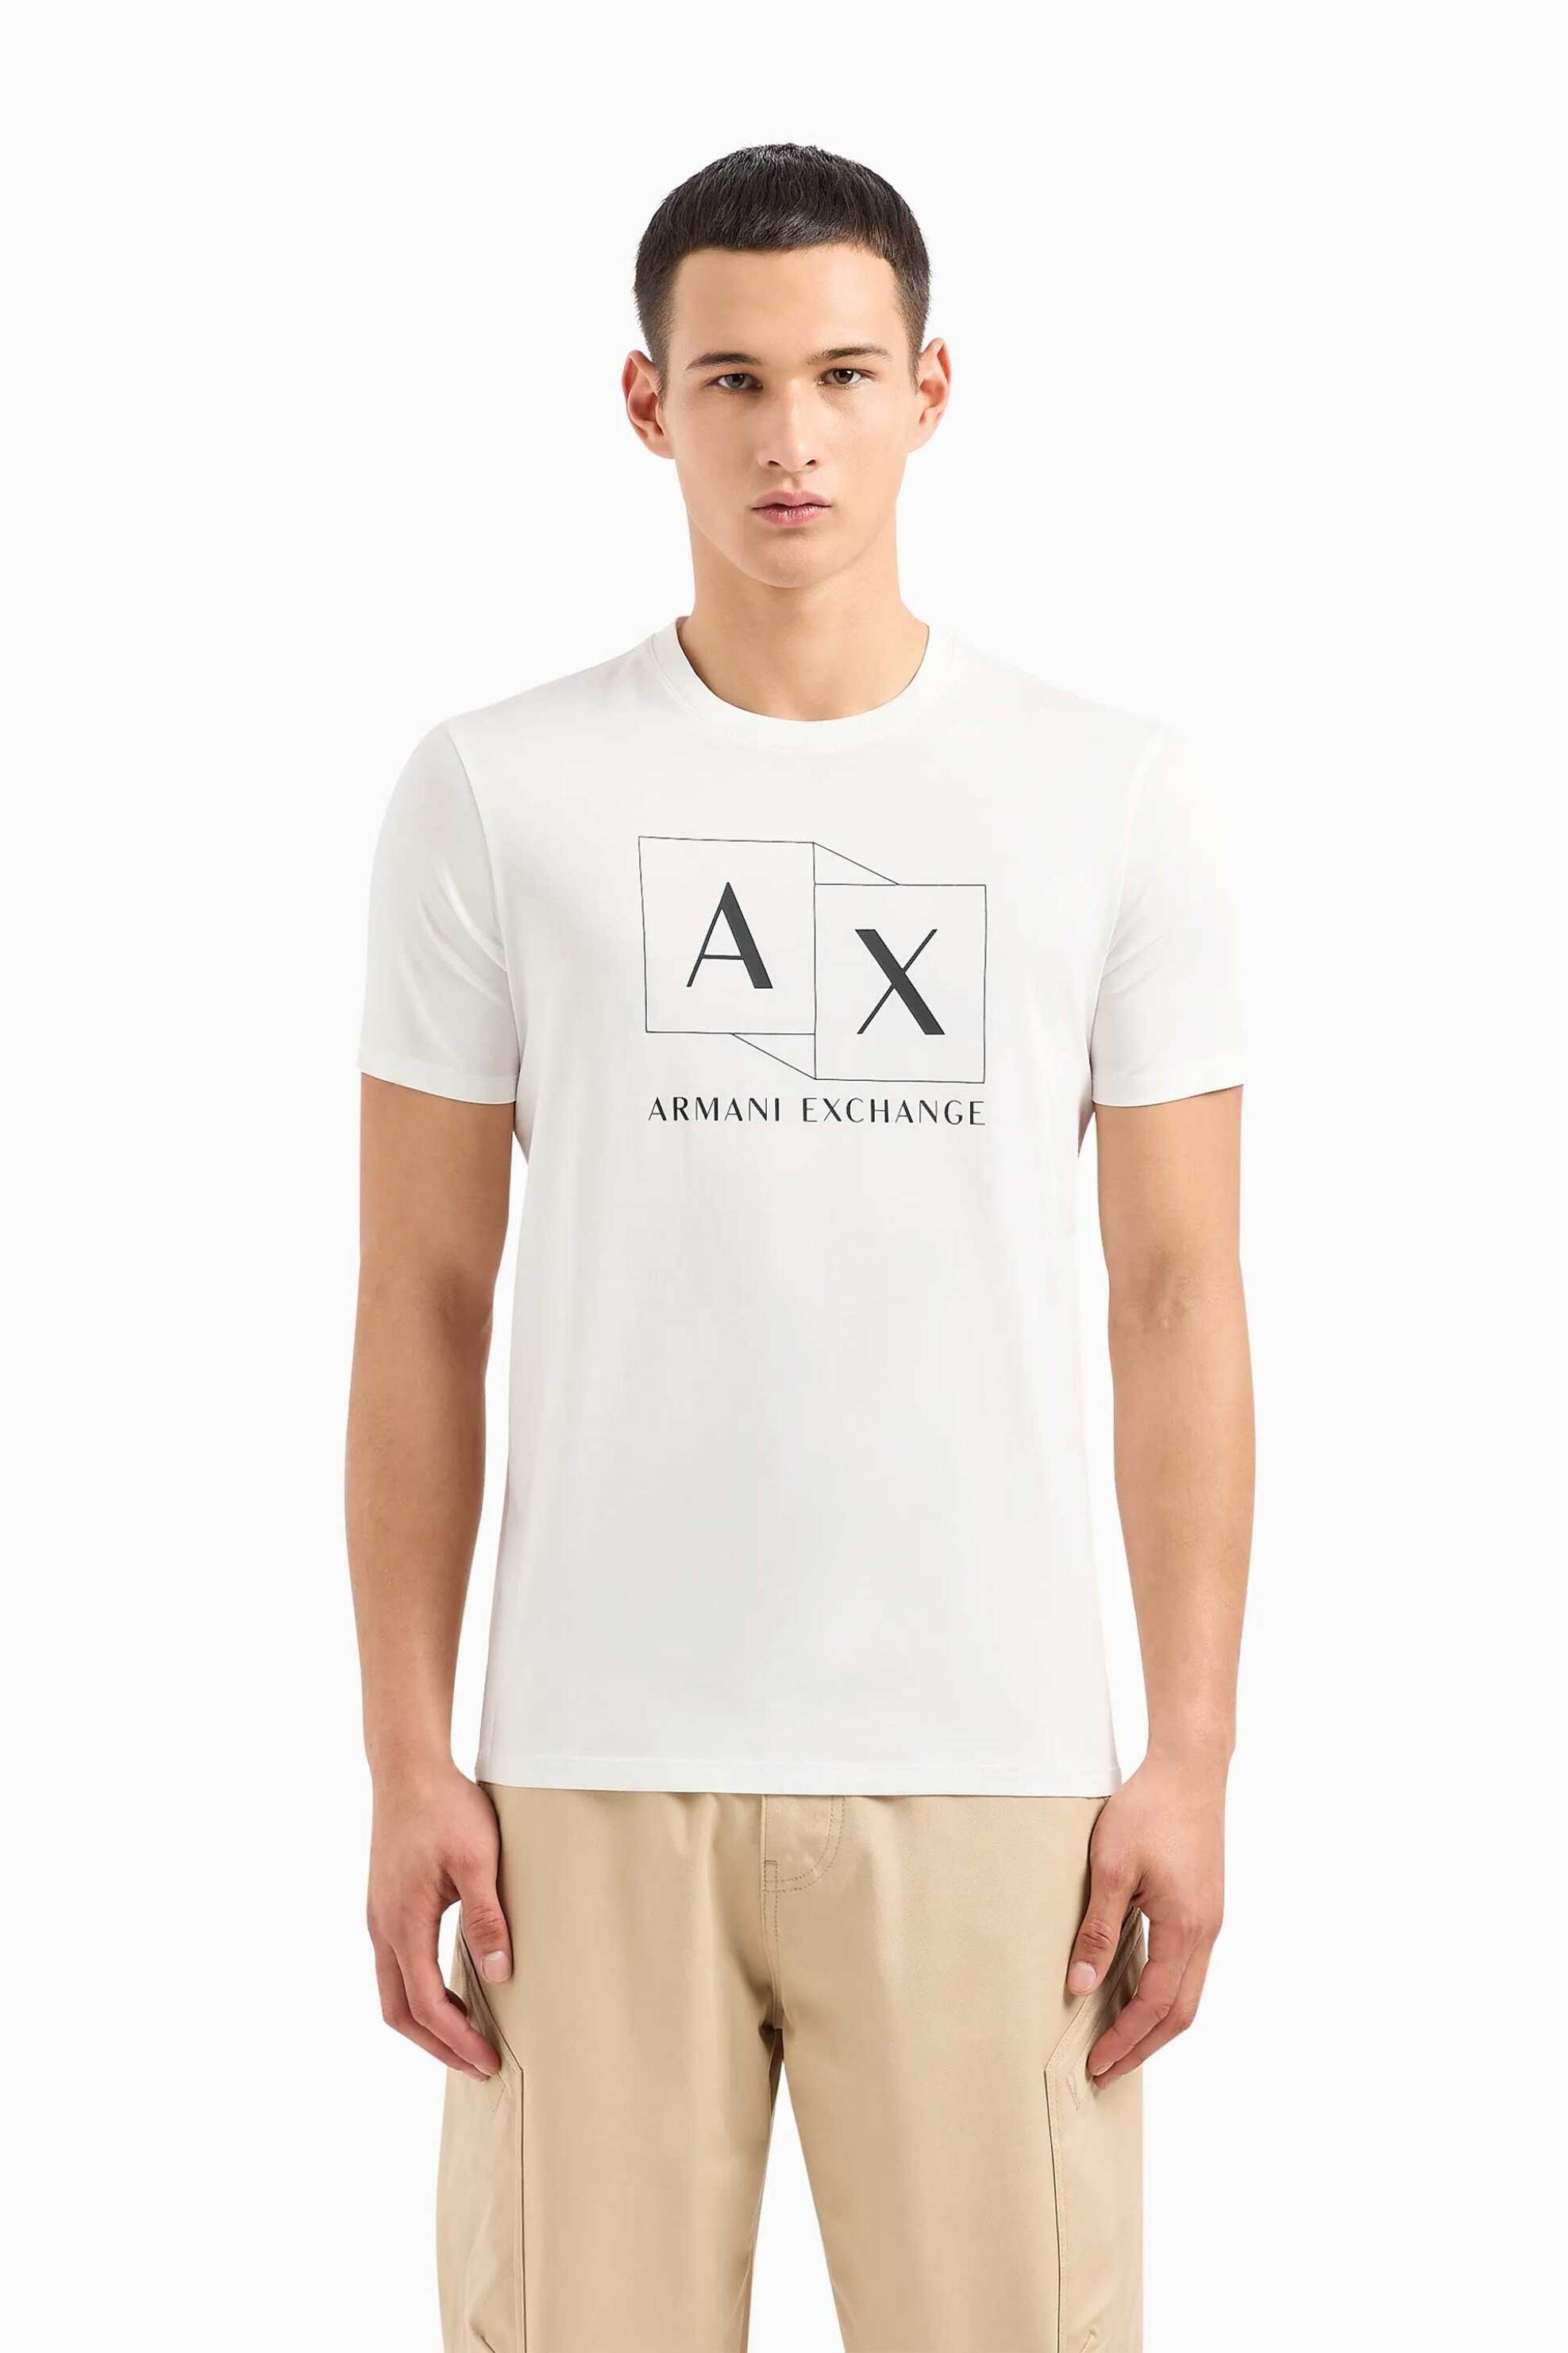 Ανδρική Μόδα > Ανδρικά Ρούχα > Ανδρικές Μπλούζες > Ανδρικά T-Shirts Armani Exchange ανδρικό T-shirt με logo print Slim Fit - 3DZTADZJ9AZ Λευκό